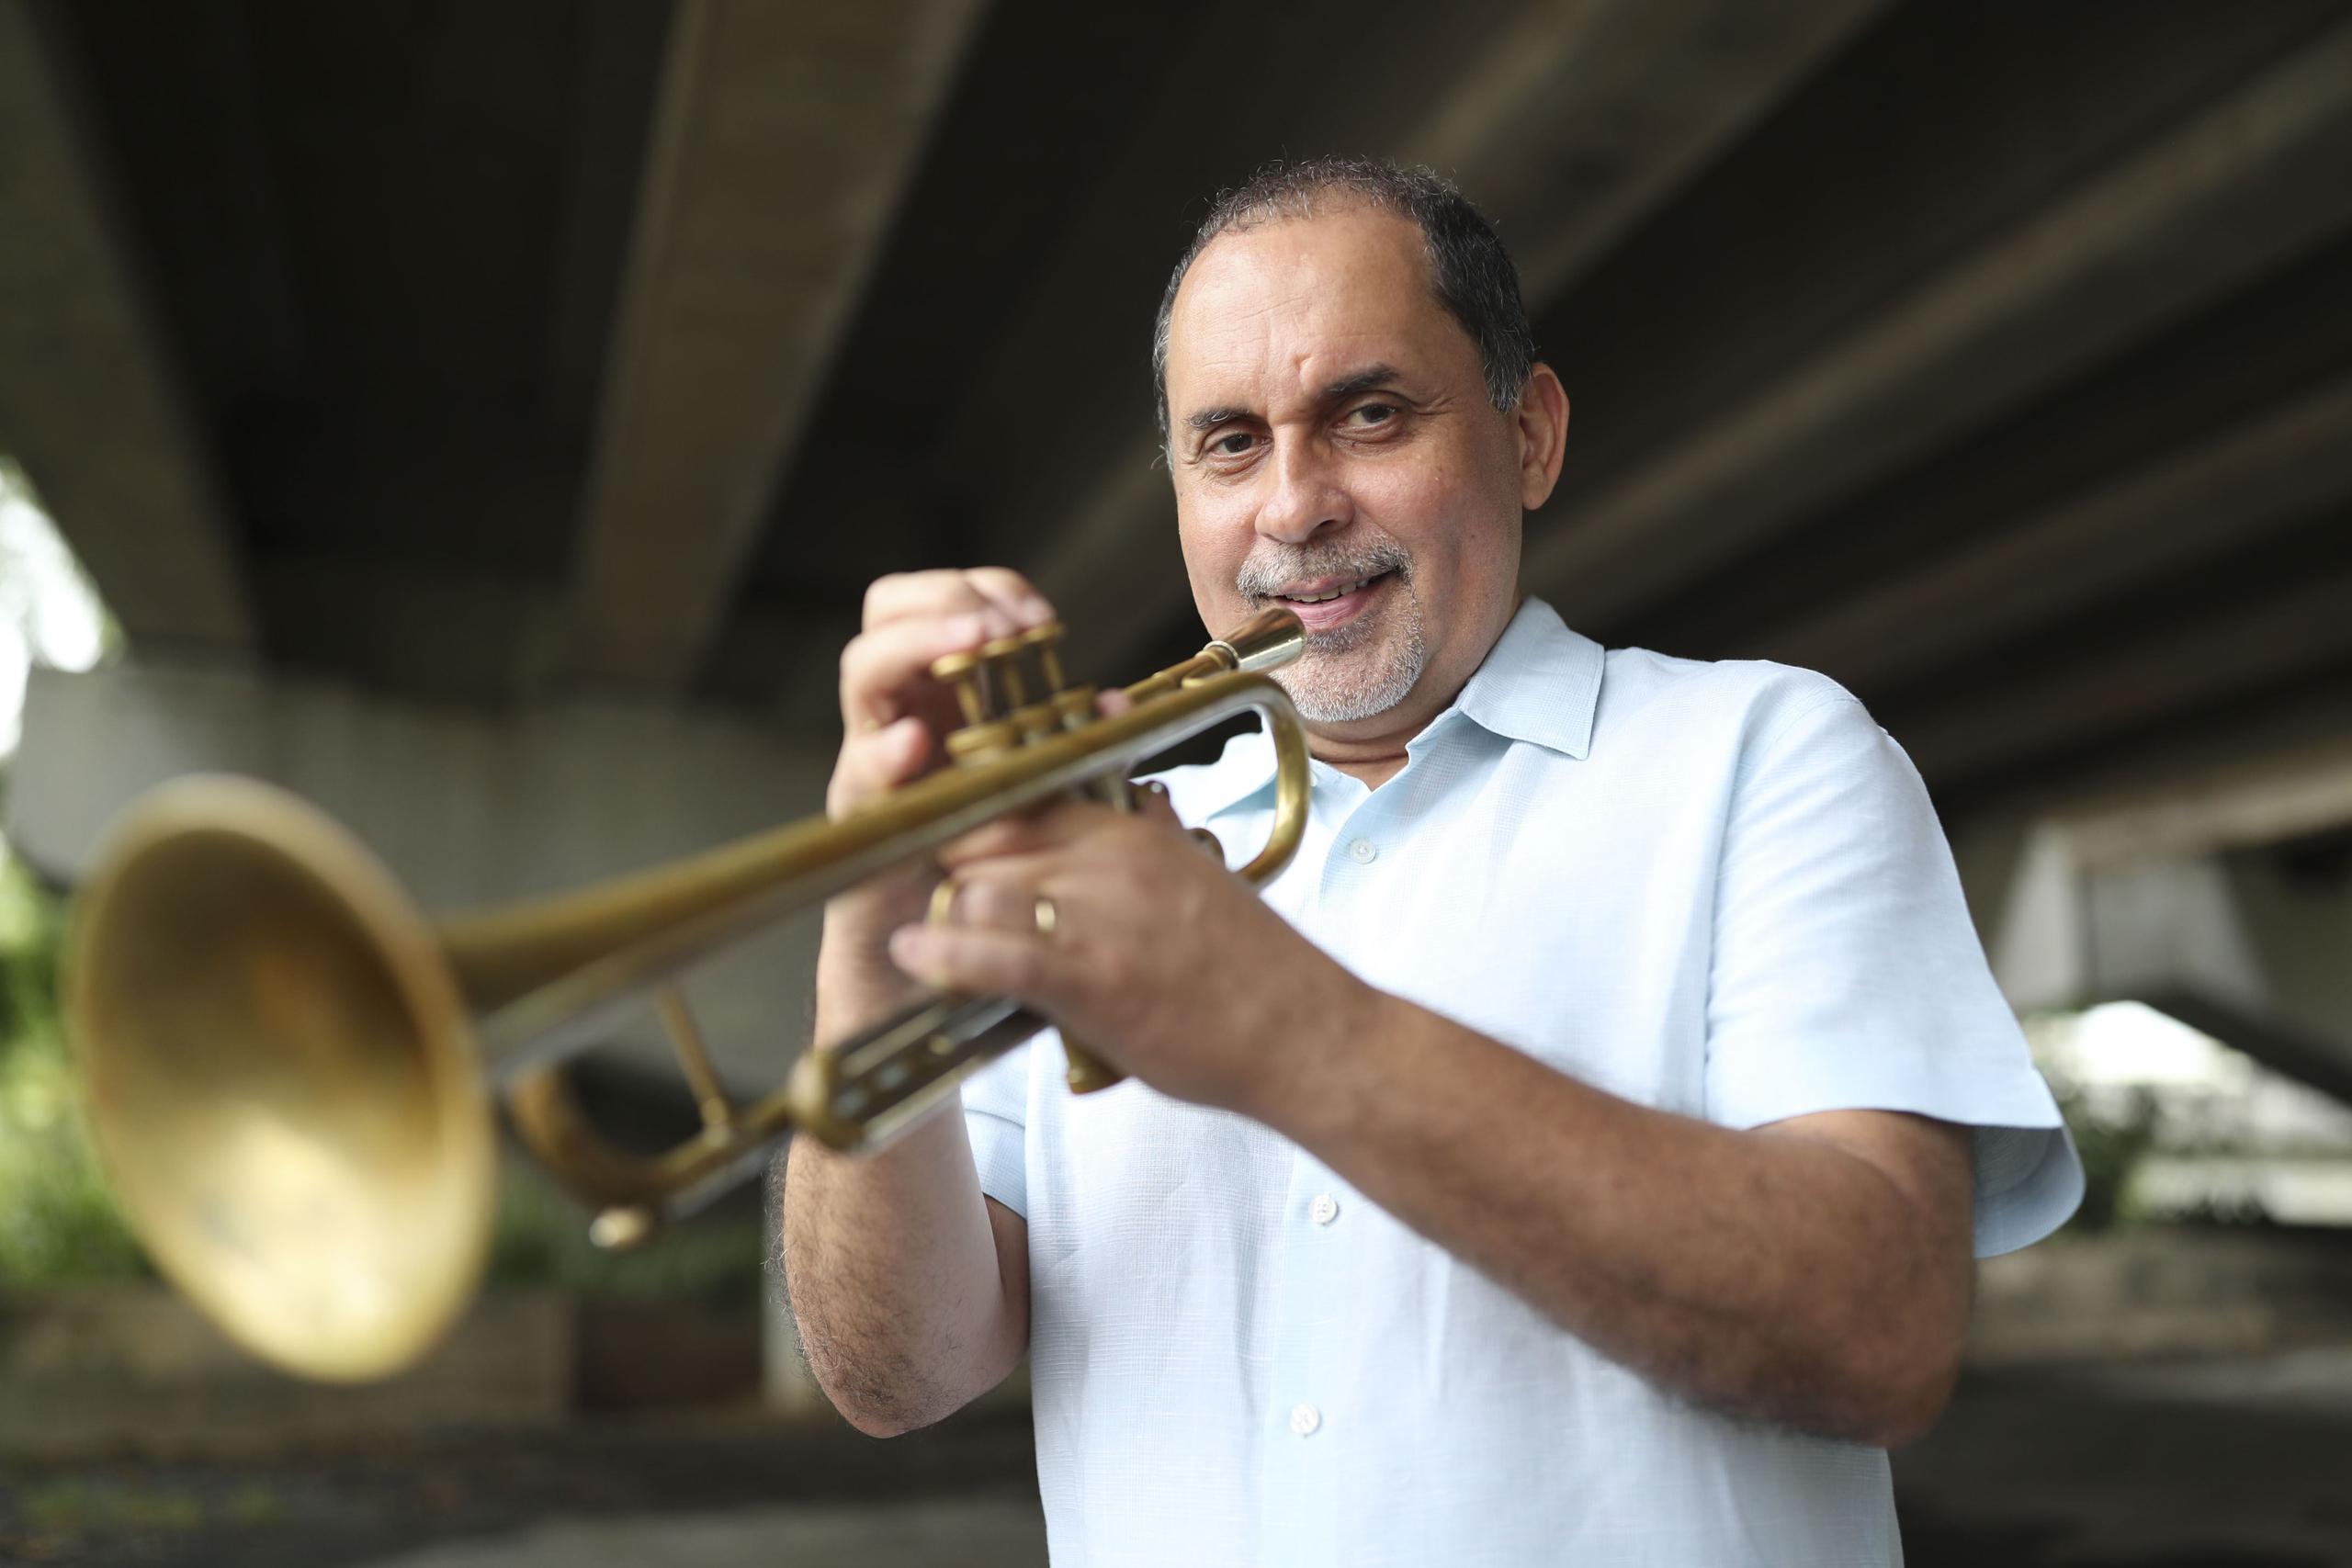 Puerto Rico Jazz Jam 2019 -25 de enero – 8:00 p. m. Brenda Hopkins / Humberto Ramírez Quartet  Project /
Bobby Capó en el Jazz / Invitado especial: Danny Rivera
